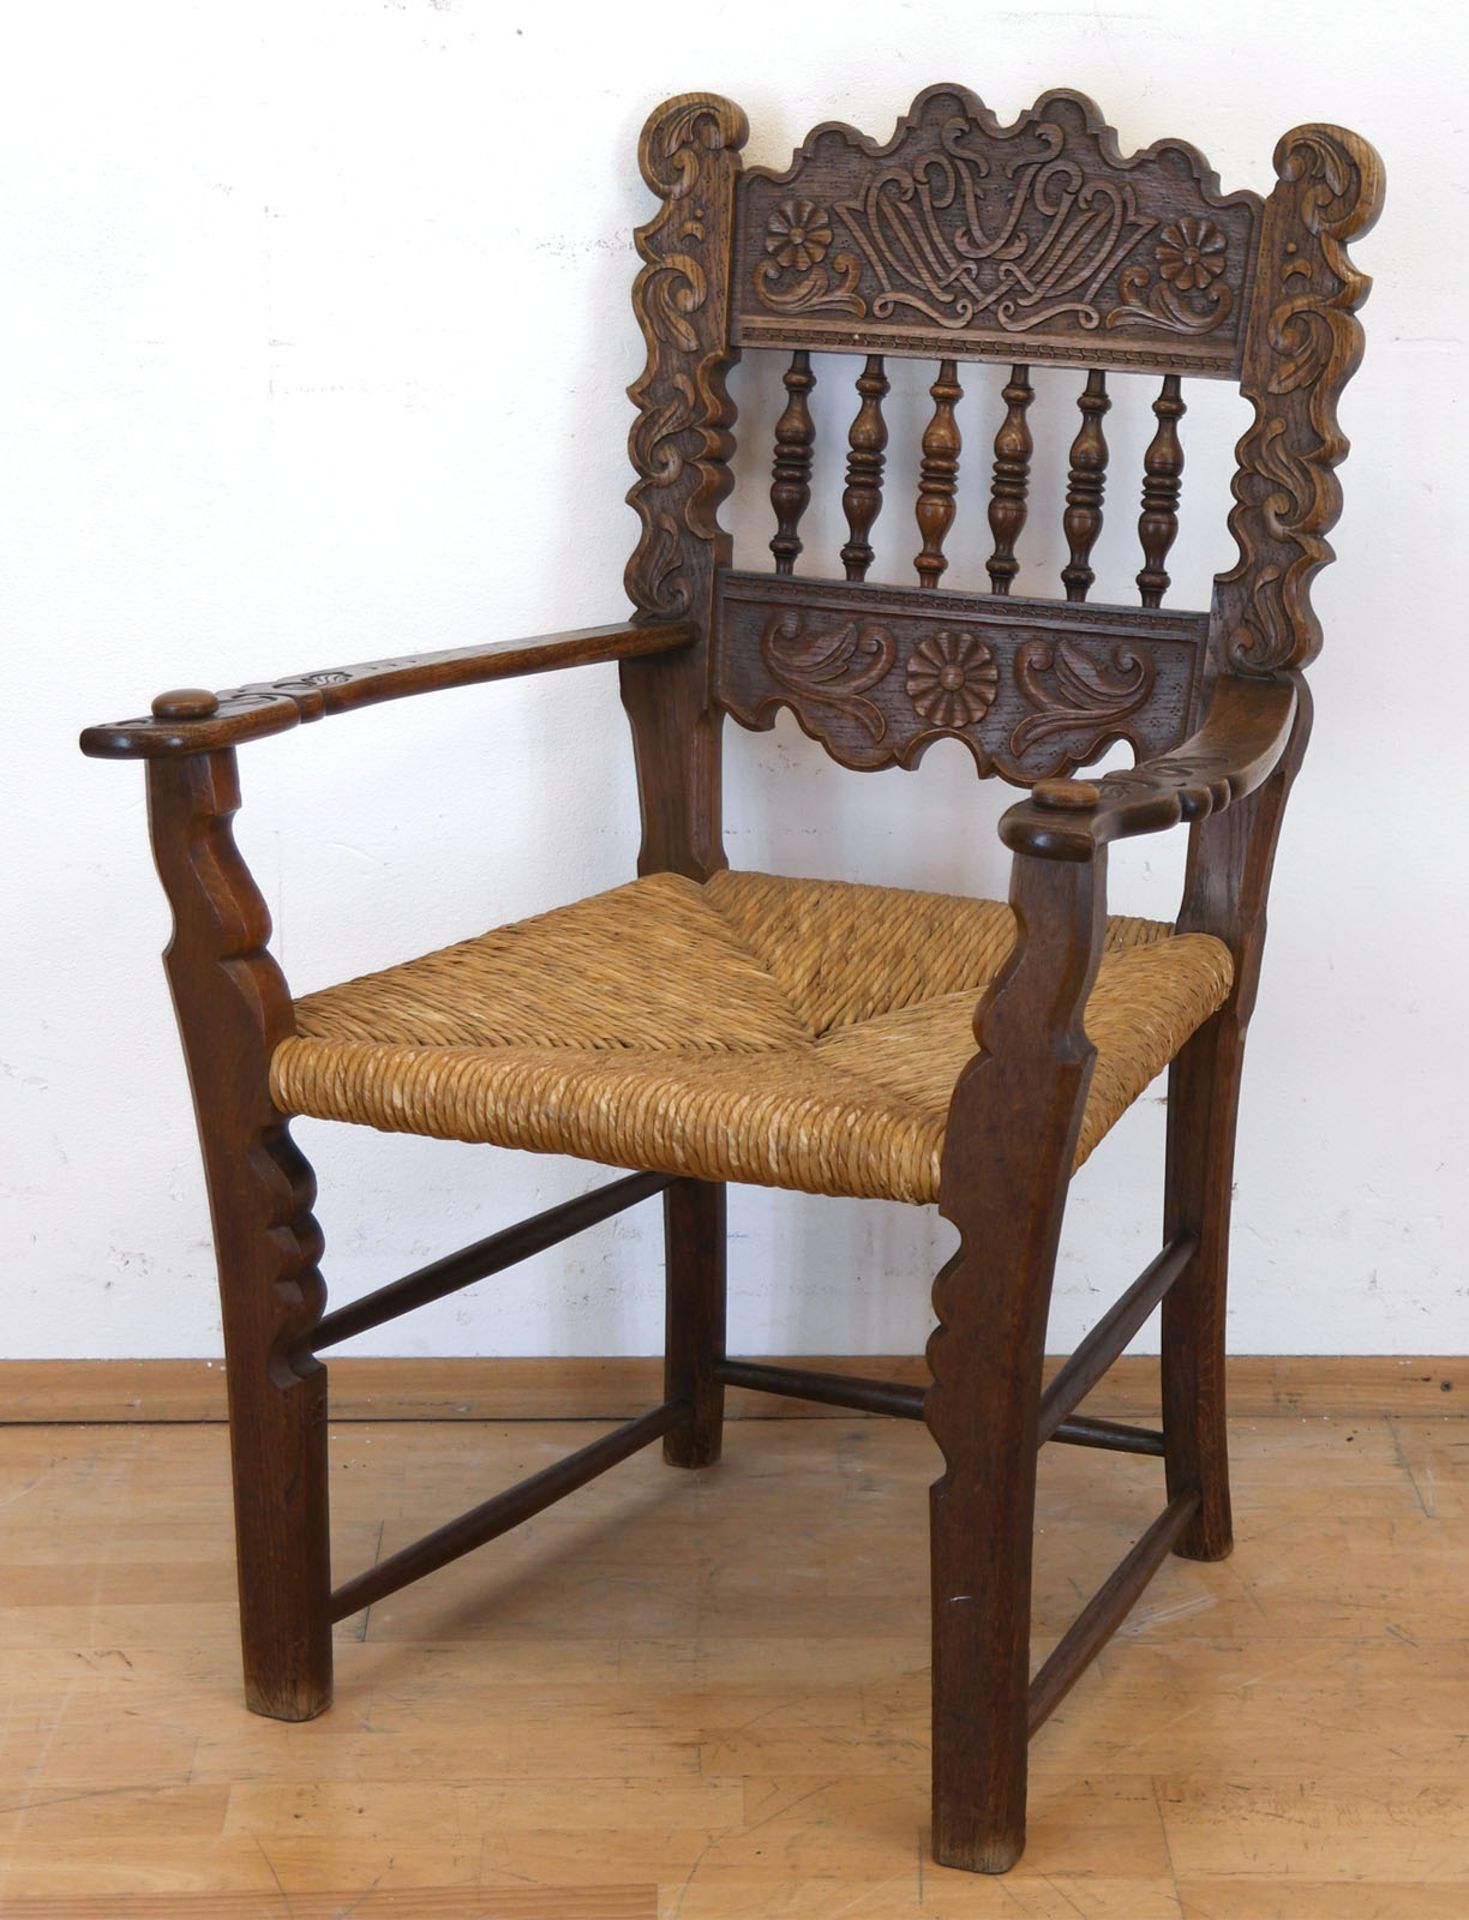 Armlehnstuhl, um 1900, Eiche, Sitz mit Binsengeflecht, reich beschnitzte Rückenlehne mit gedrechsel - Image 2 of 2